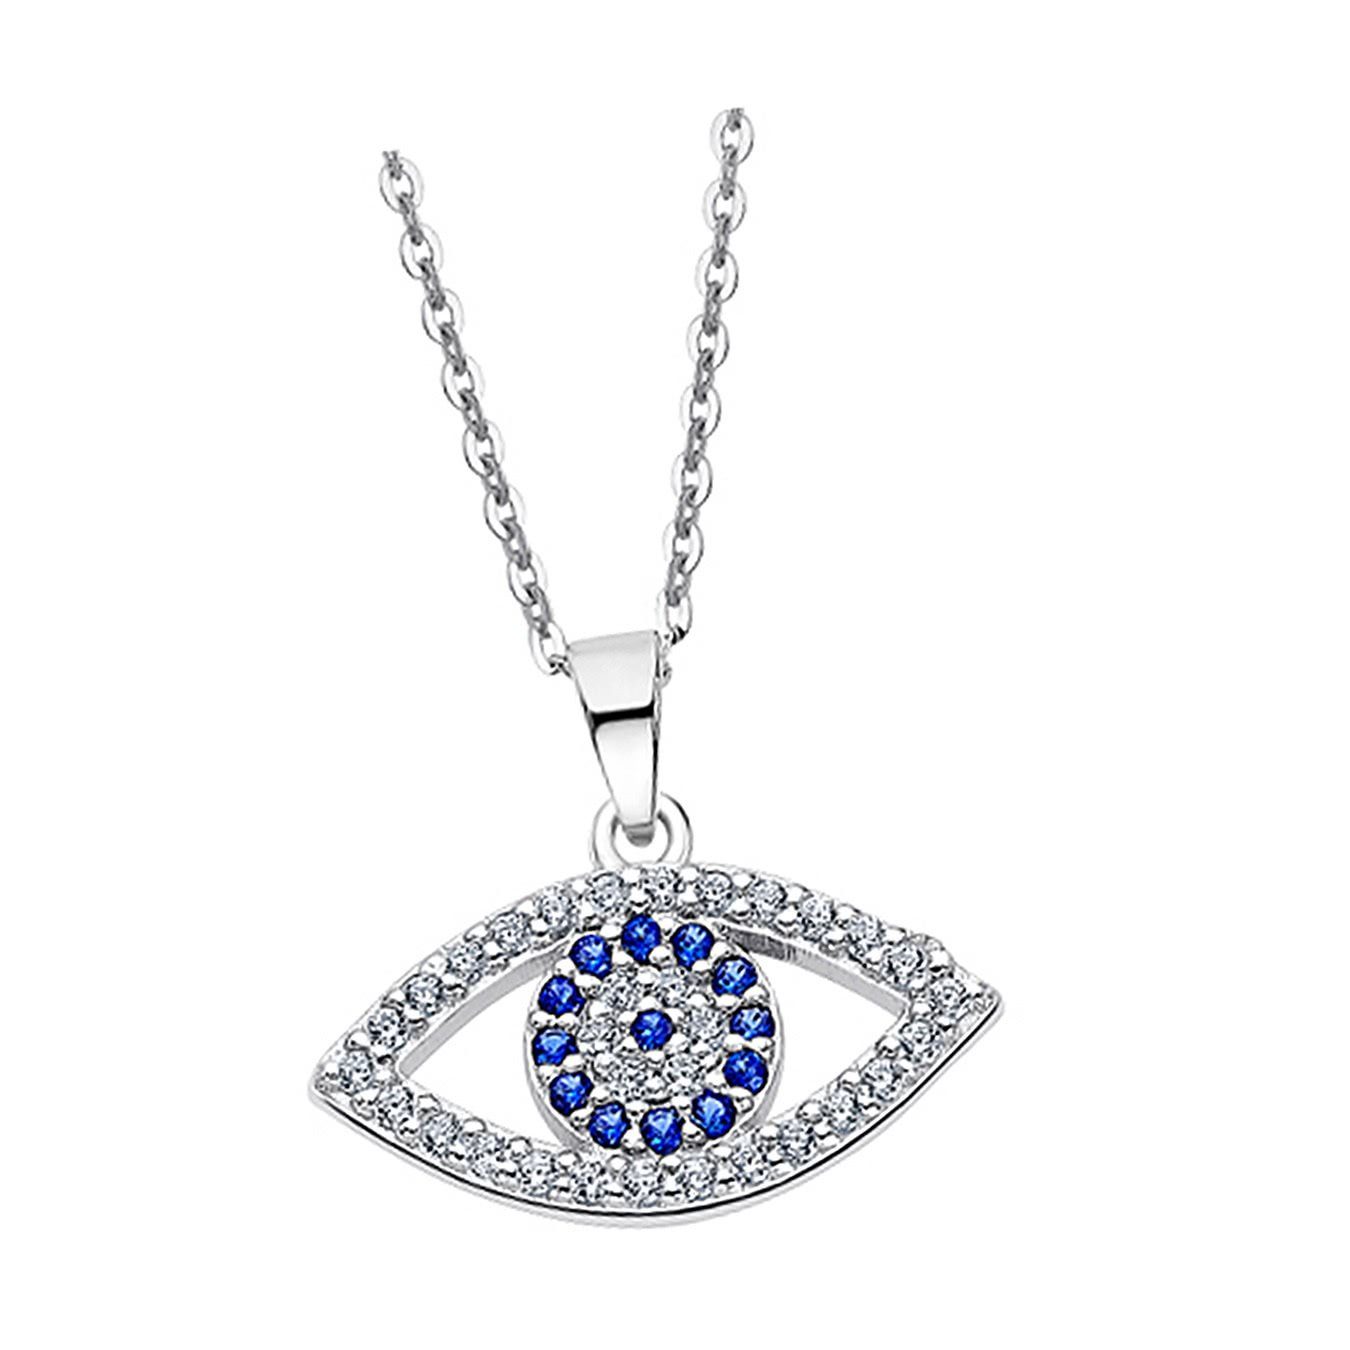 LOTUS SILVER Silberkette Lotus Silver Auge des Horus Halskette, Damen Kette  Auge des Horus aus 925 Sterling Silber, silber, weiß, blau, Inklusive 3cm  Verlängerung